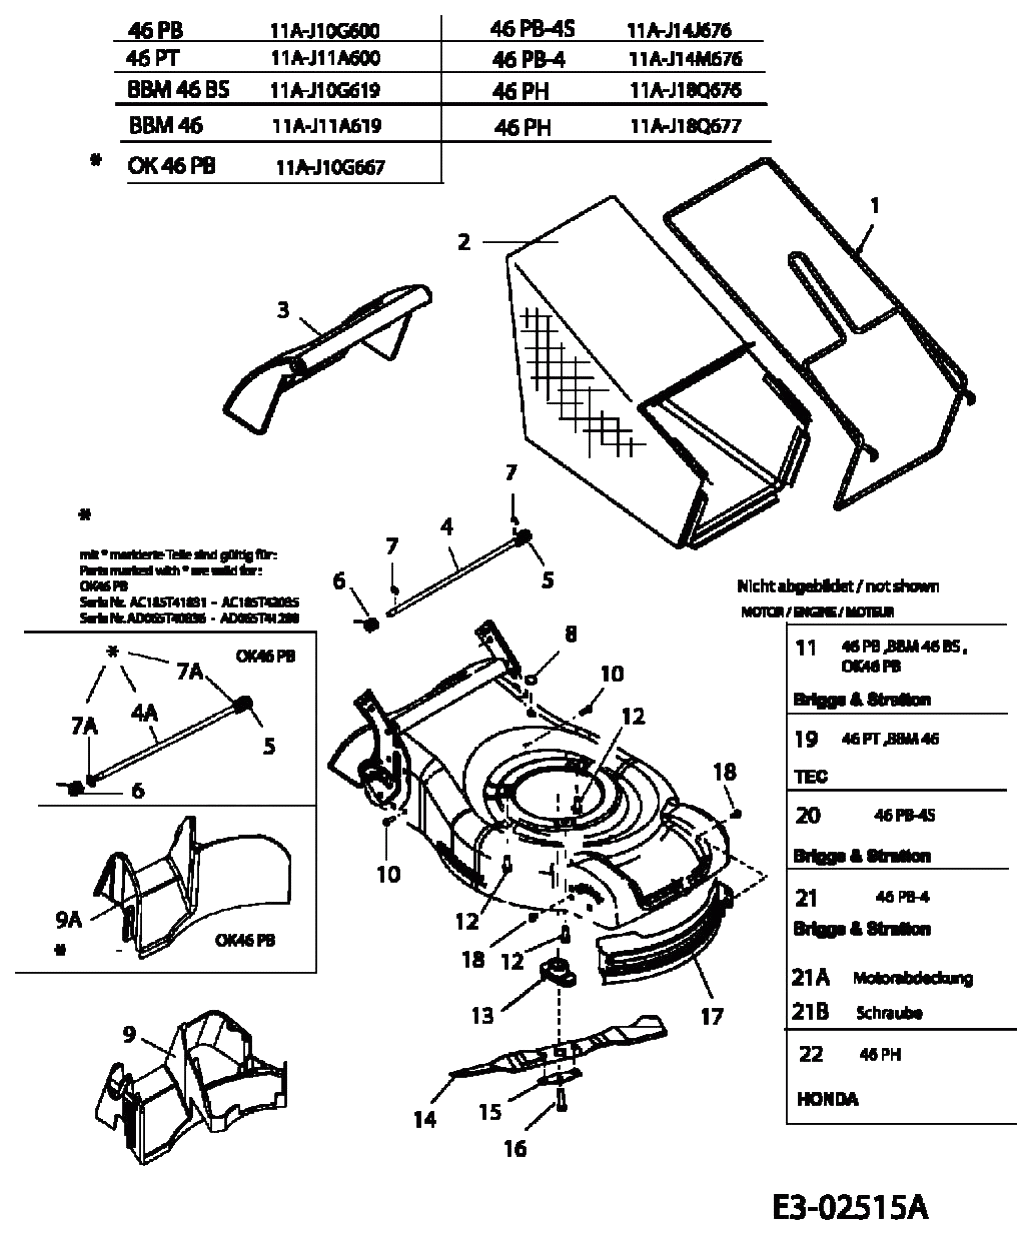 MTD Артикул 11A-J18Q677 (год выпуска 2005). Травосборник, ножи, двигатель